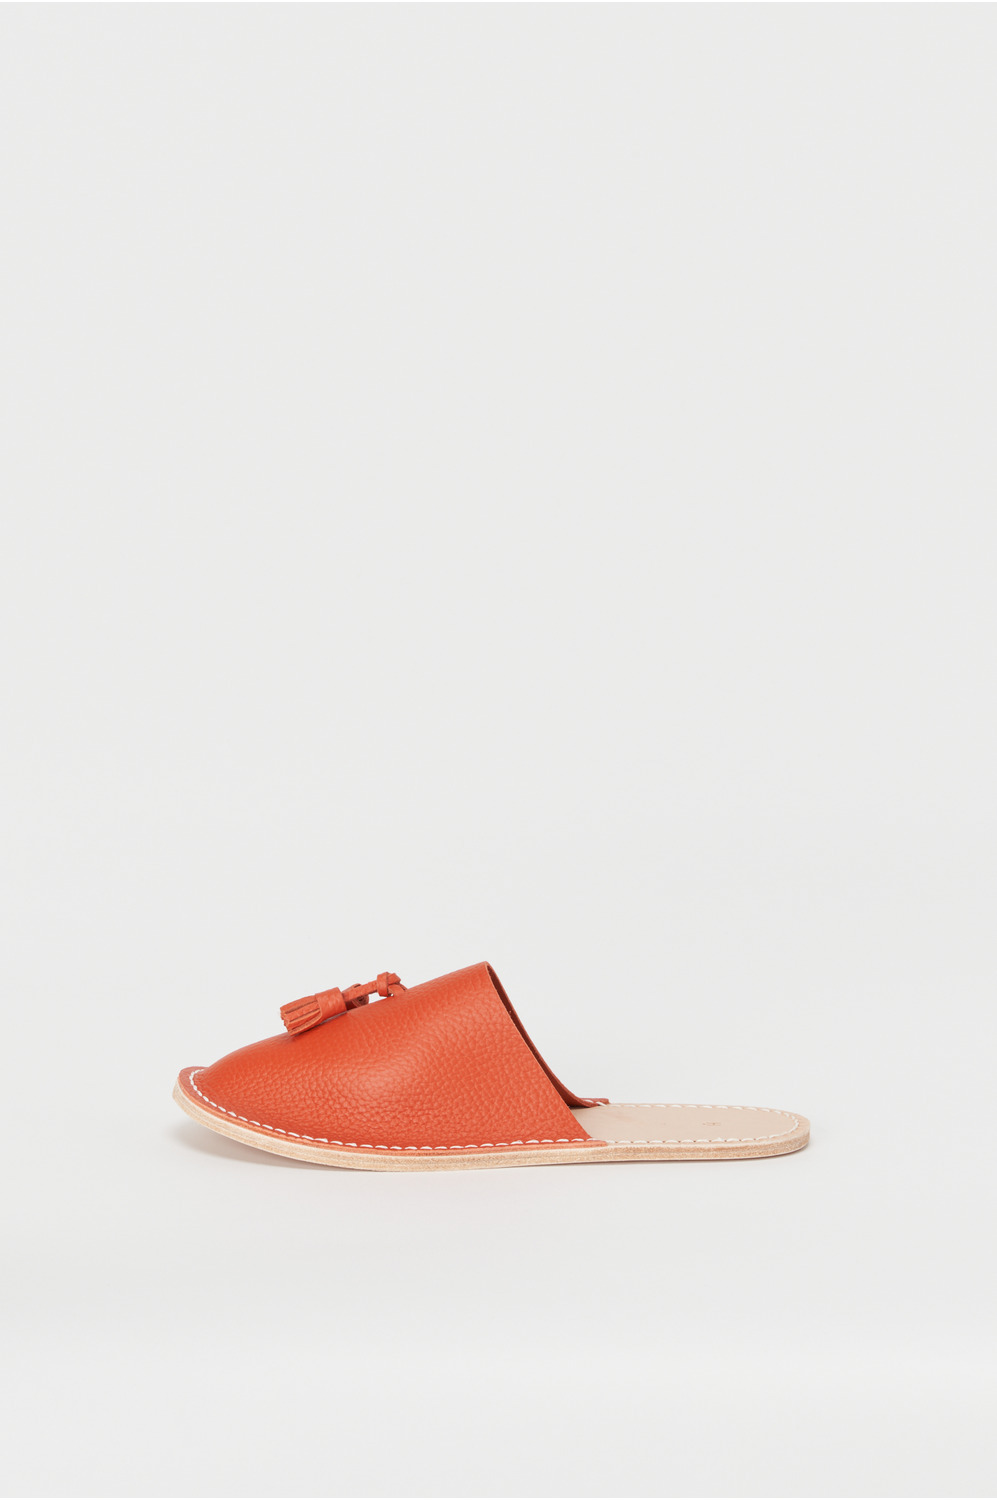 leather slipper 詳細画像 copper orange 2